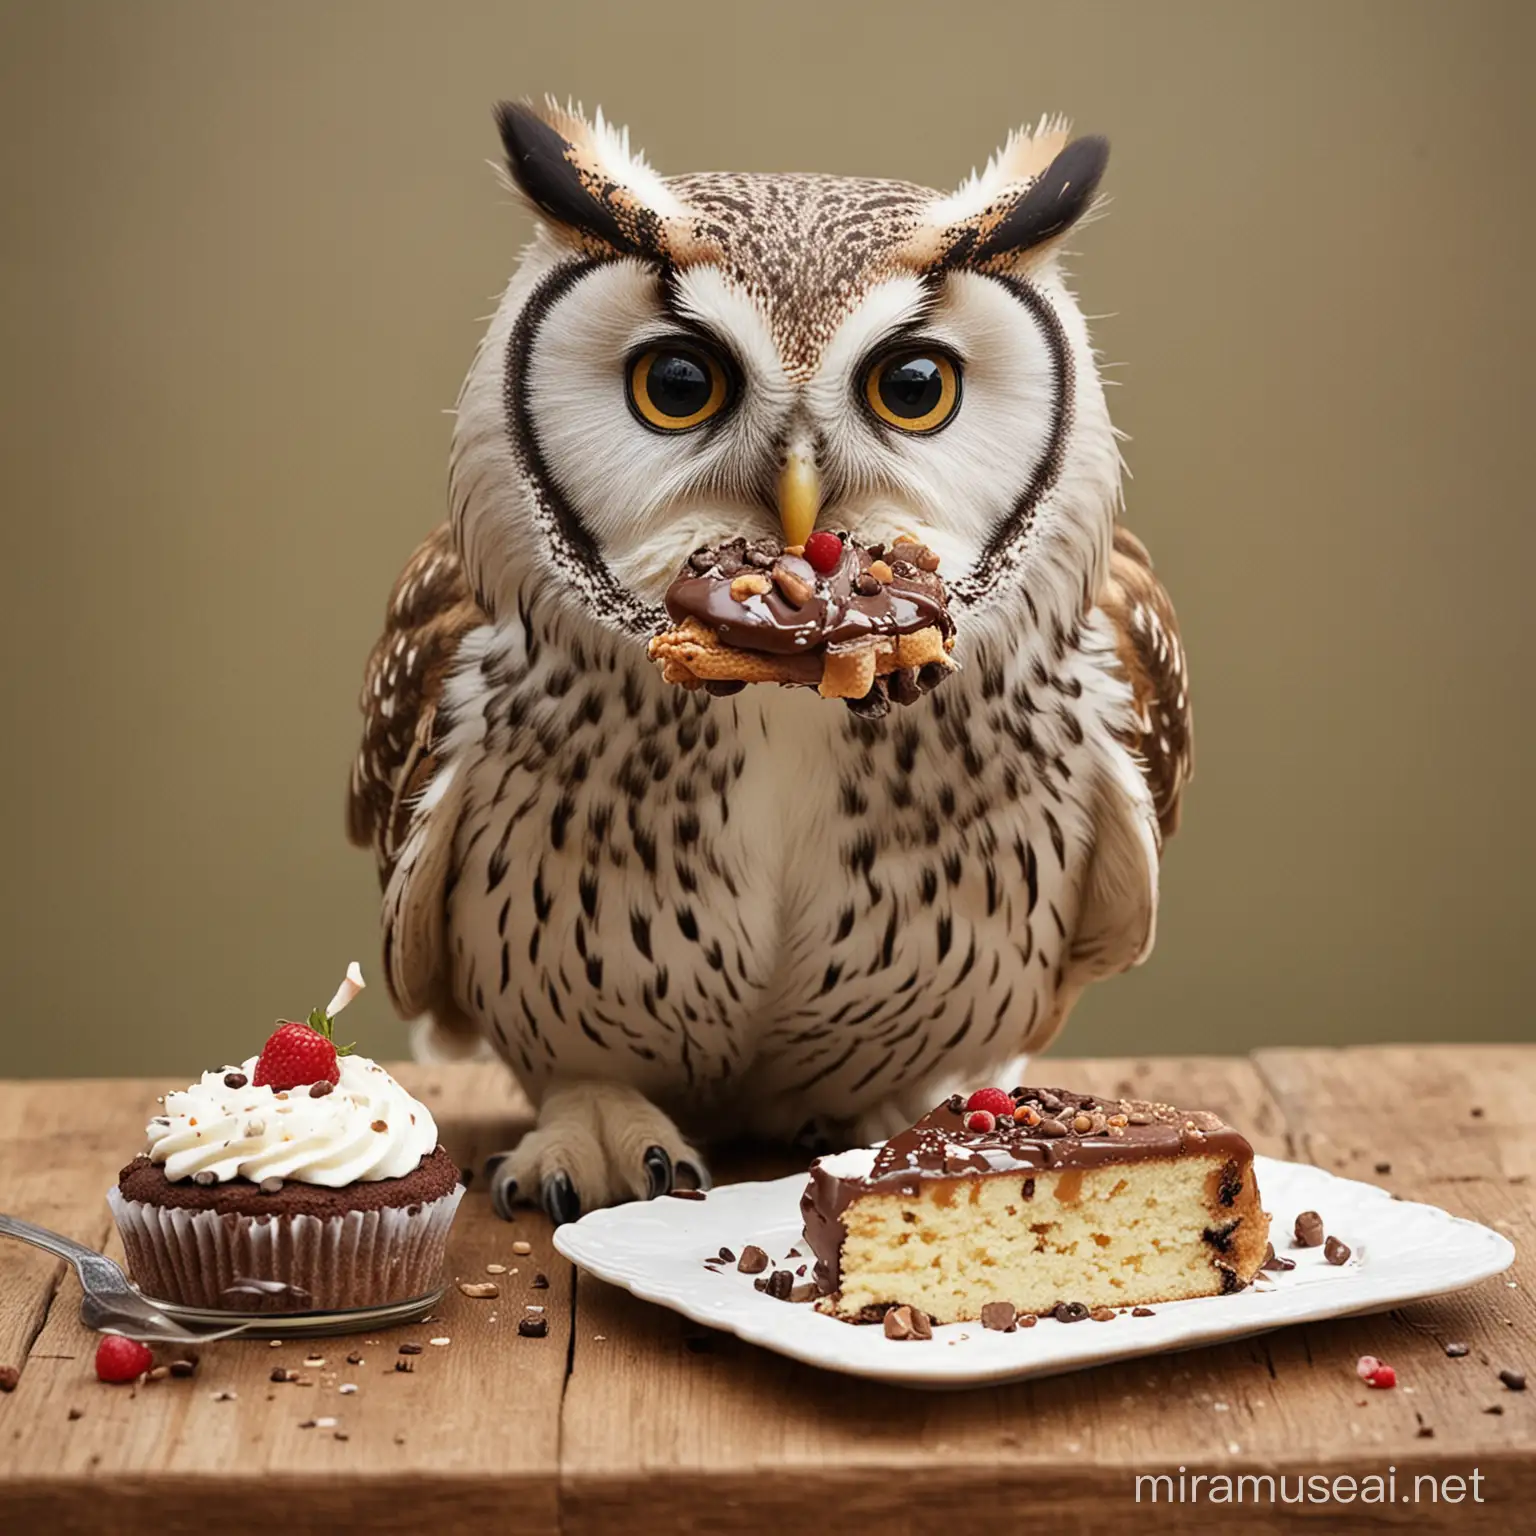 Hungry Owl Enjoying Delicious Cake